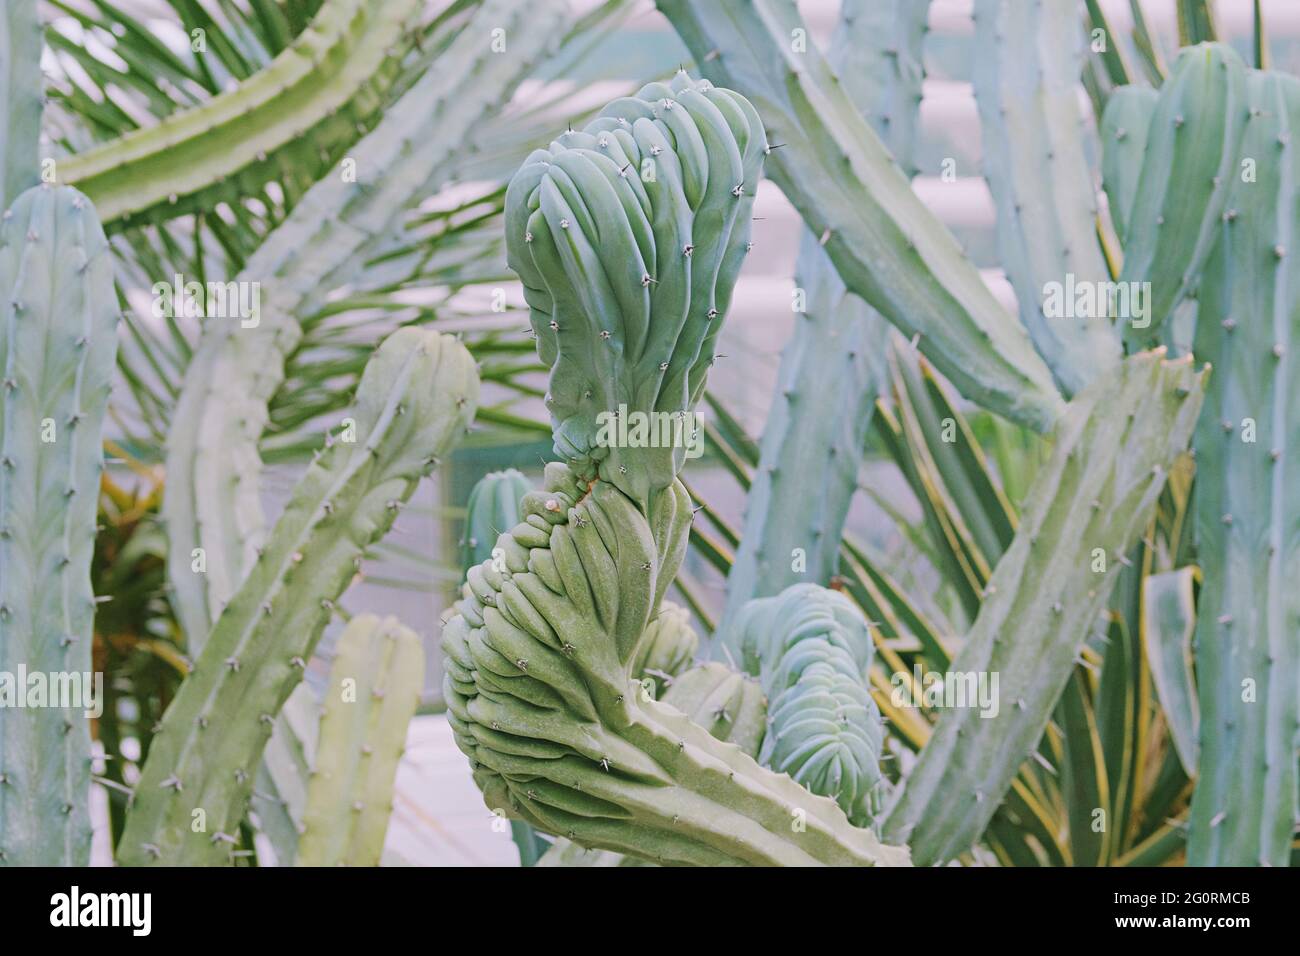 Cacti grow in a greenhouse. Cactus Cereus peruvianus. Close-up. Stock Photo